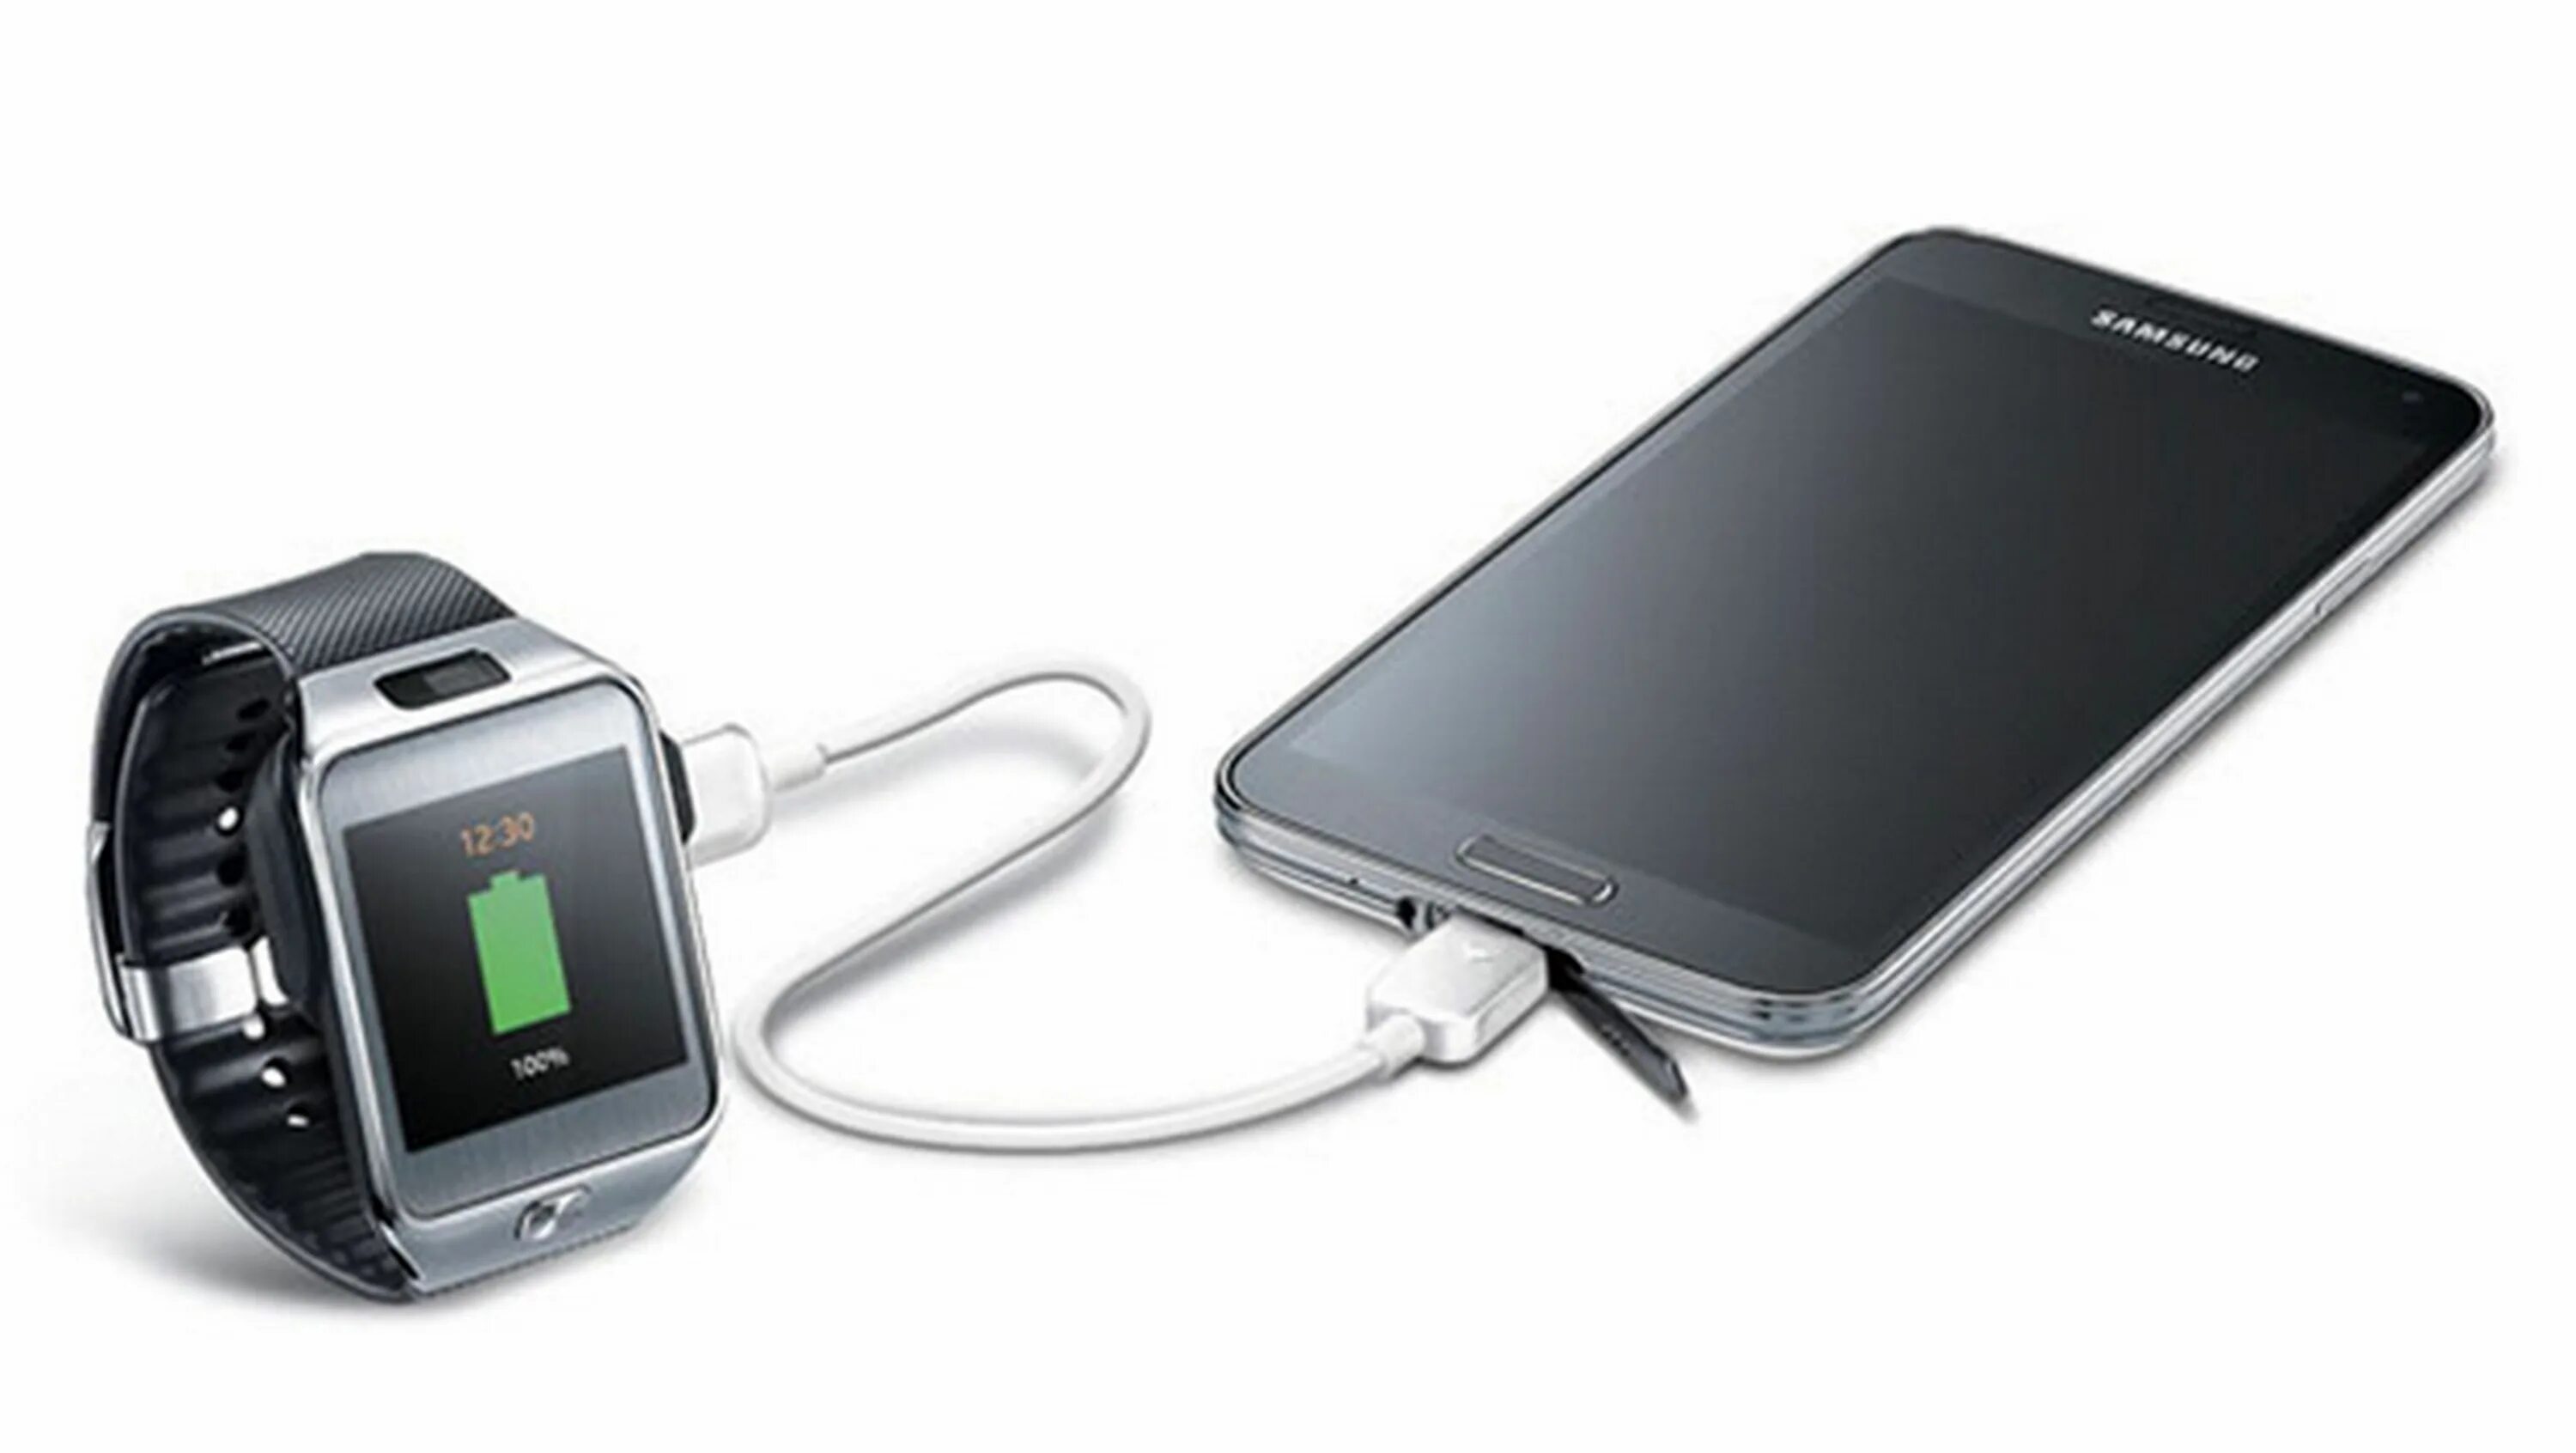 Днс зарядка для телефона. Samsung Xclipse 920. Мобильное устройство Samsung. Зарядное устройство для смартфона Samsung. С возможностью подзарядки.